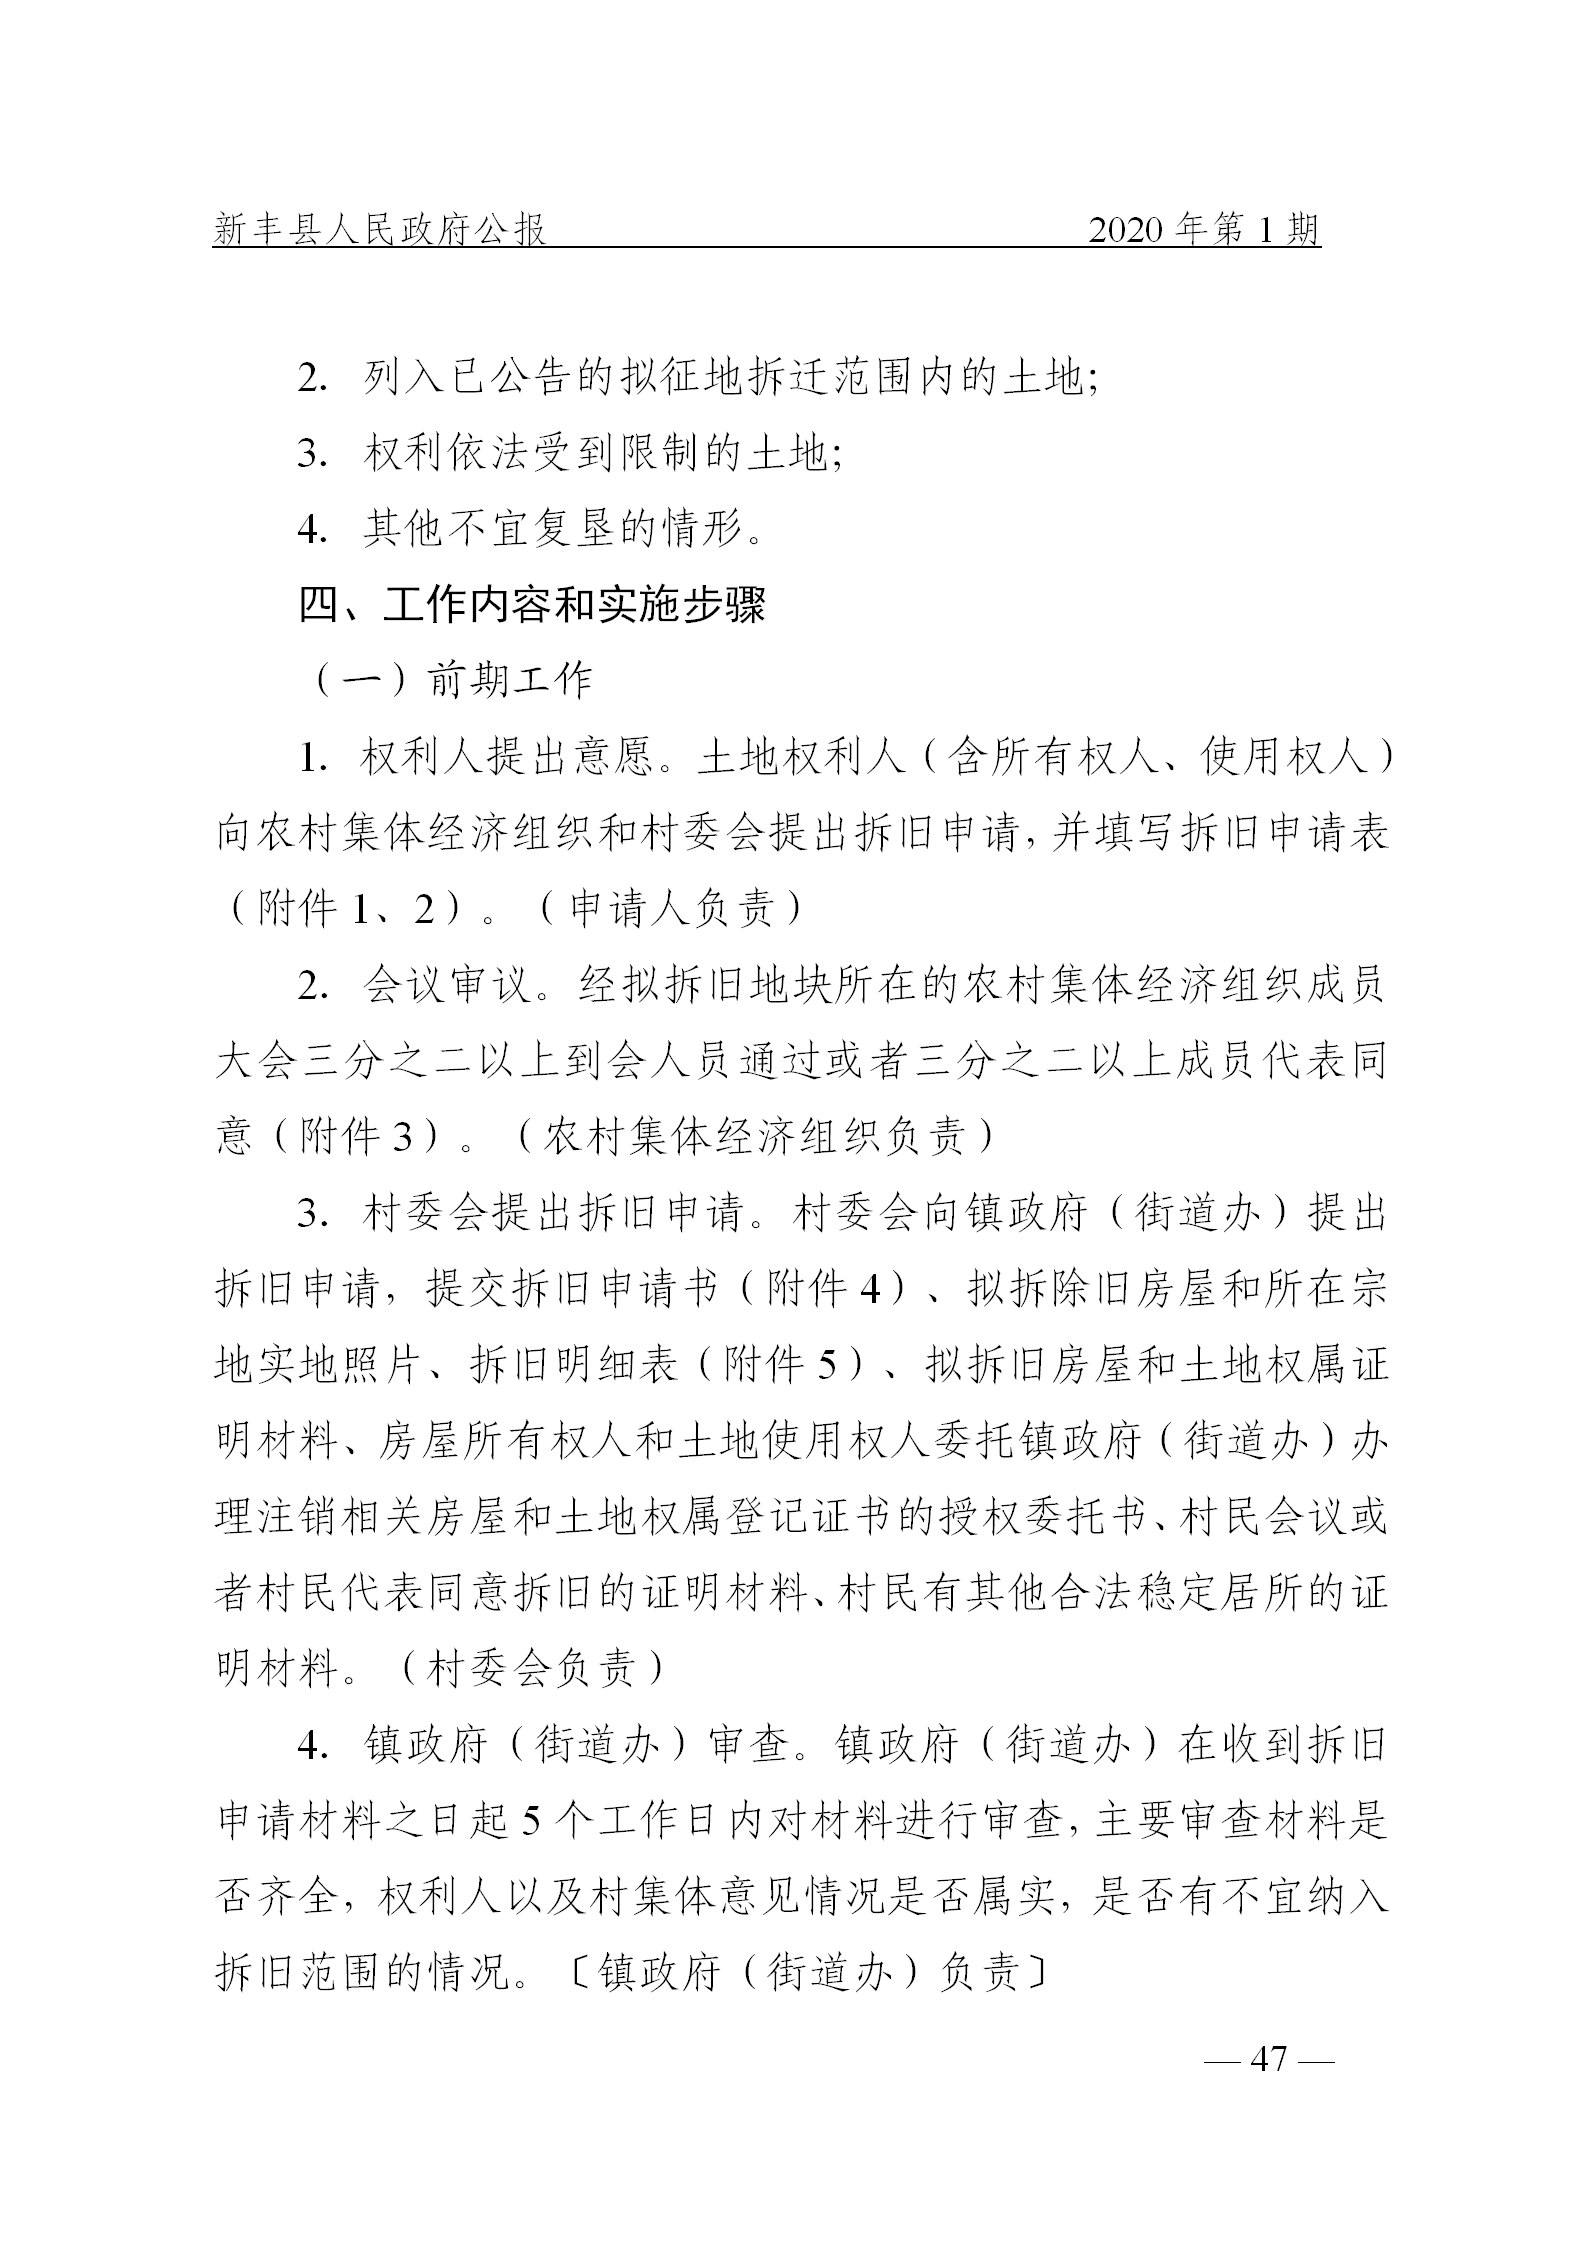 《新丰县人民政府公报》2020年第1期(1)_47.png